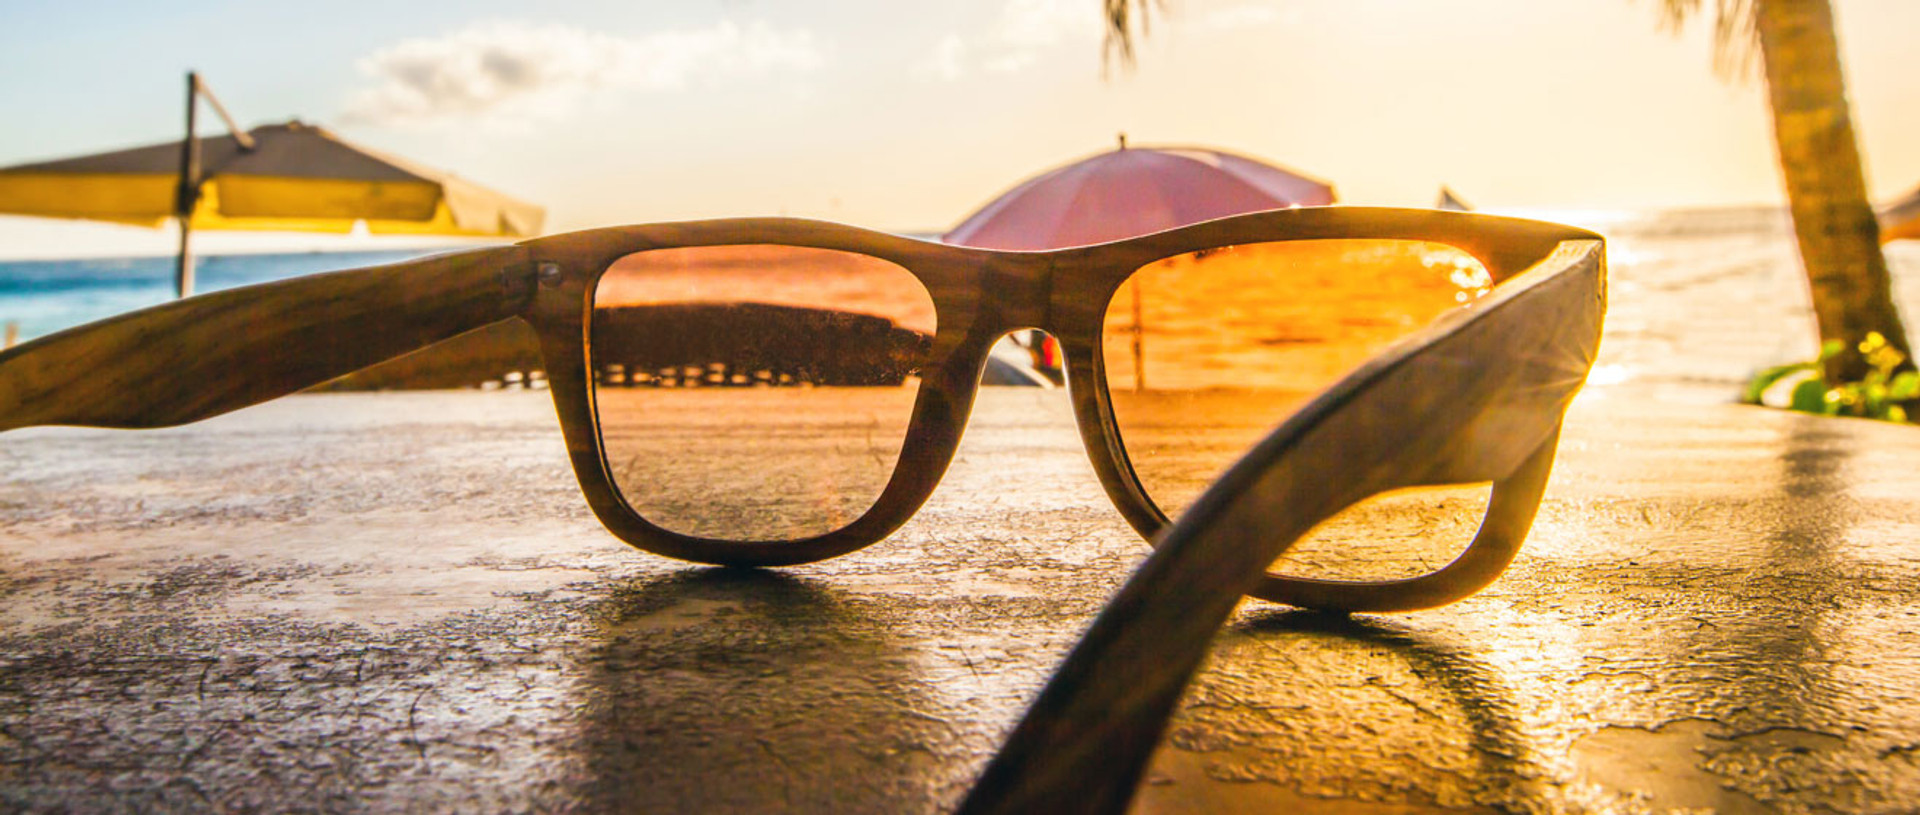 Сонцезахисні окуляри: як правильно вибрати, чи можна пластикові і коли іти до лікаря